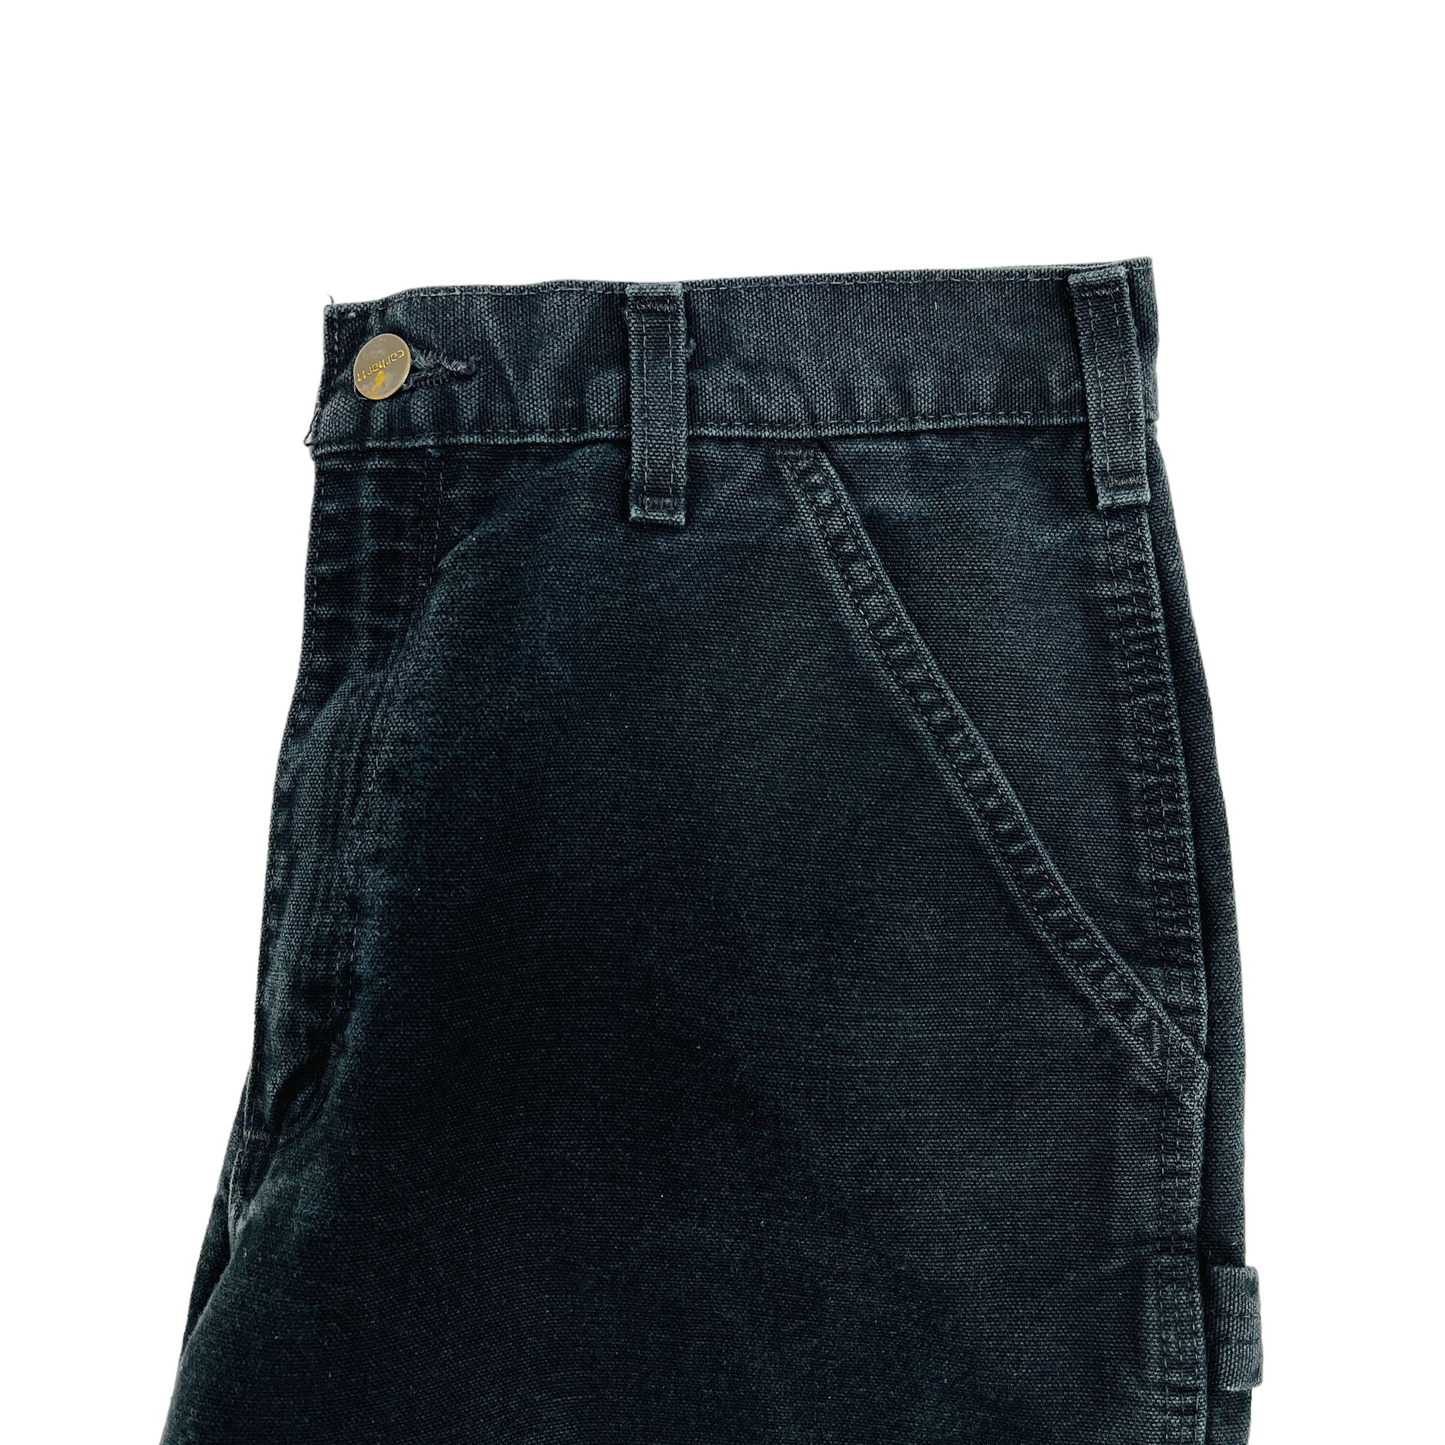 
                  
                    Carhartt Carpenter Trousers - W31 L32
                  
                